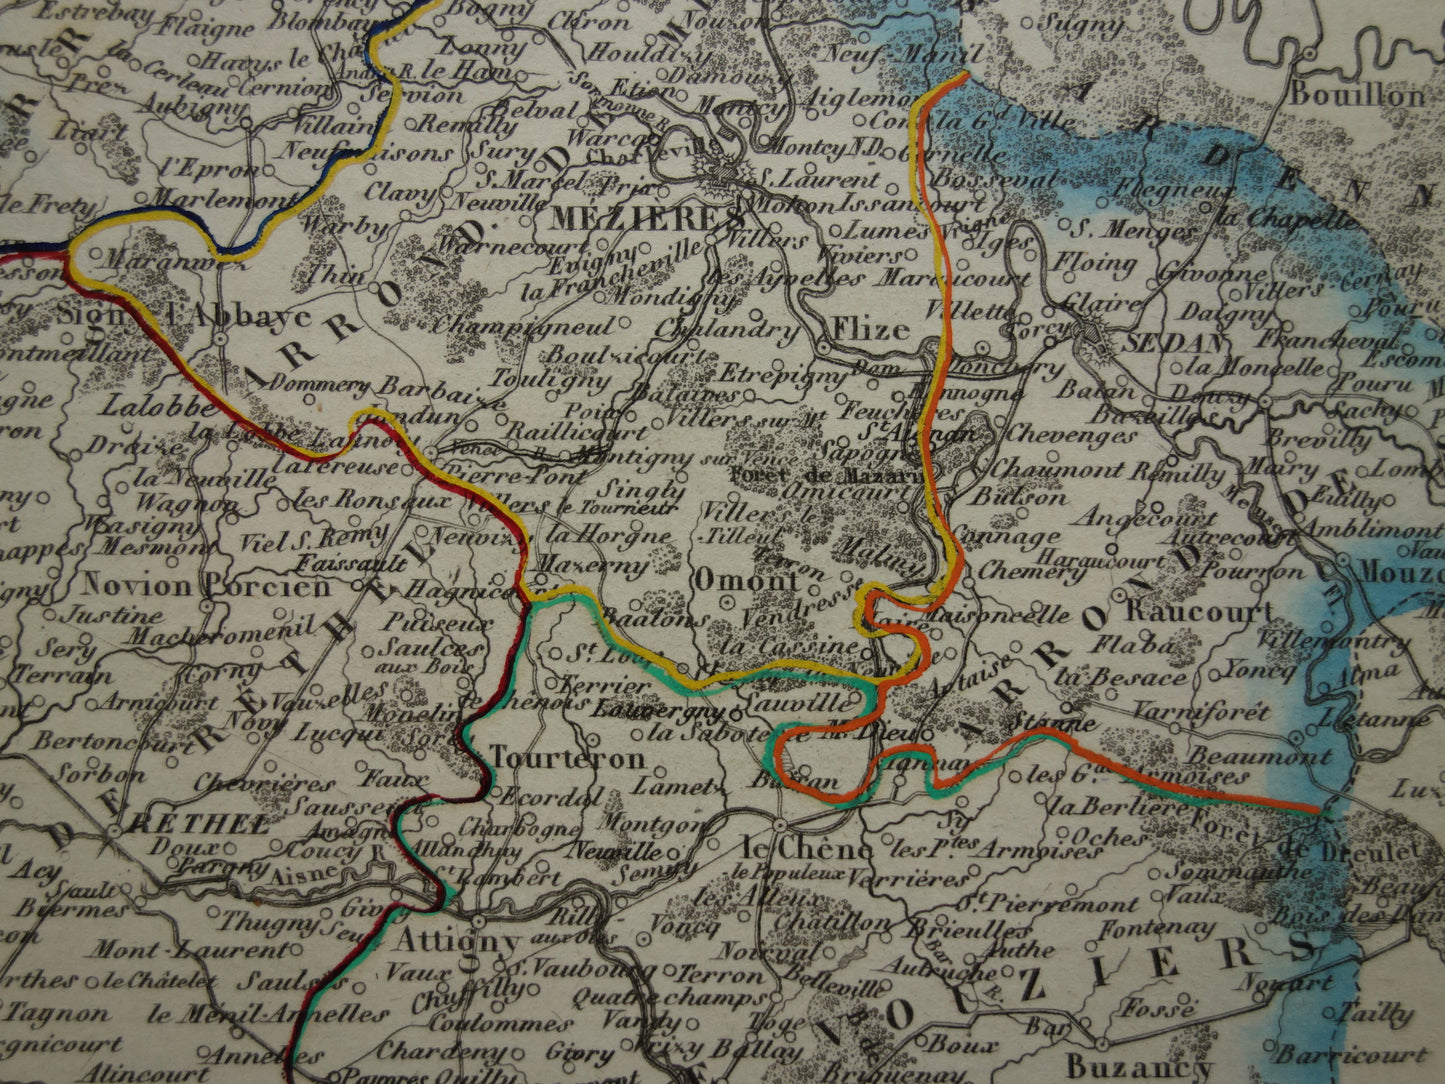 Oude kaart van Ardennes departement in Frankrijk uit 1851 originele antieke handgekleurde landkaart Charleville Mezieres Rethel Sedan Revin